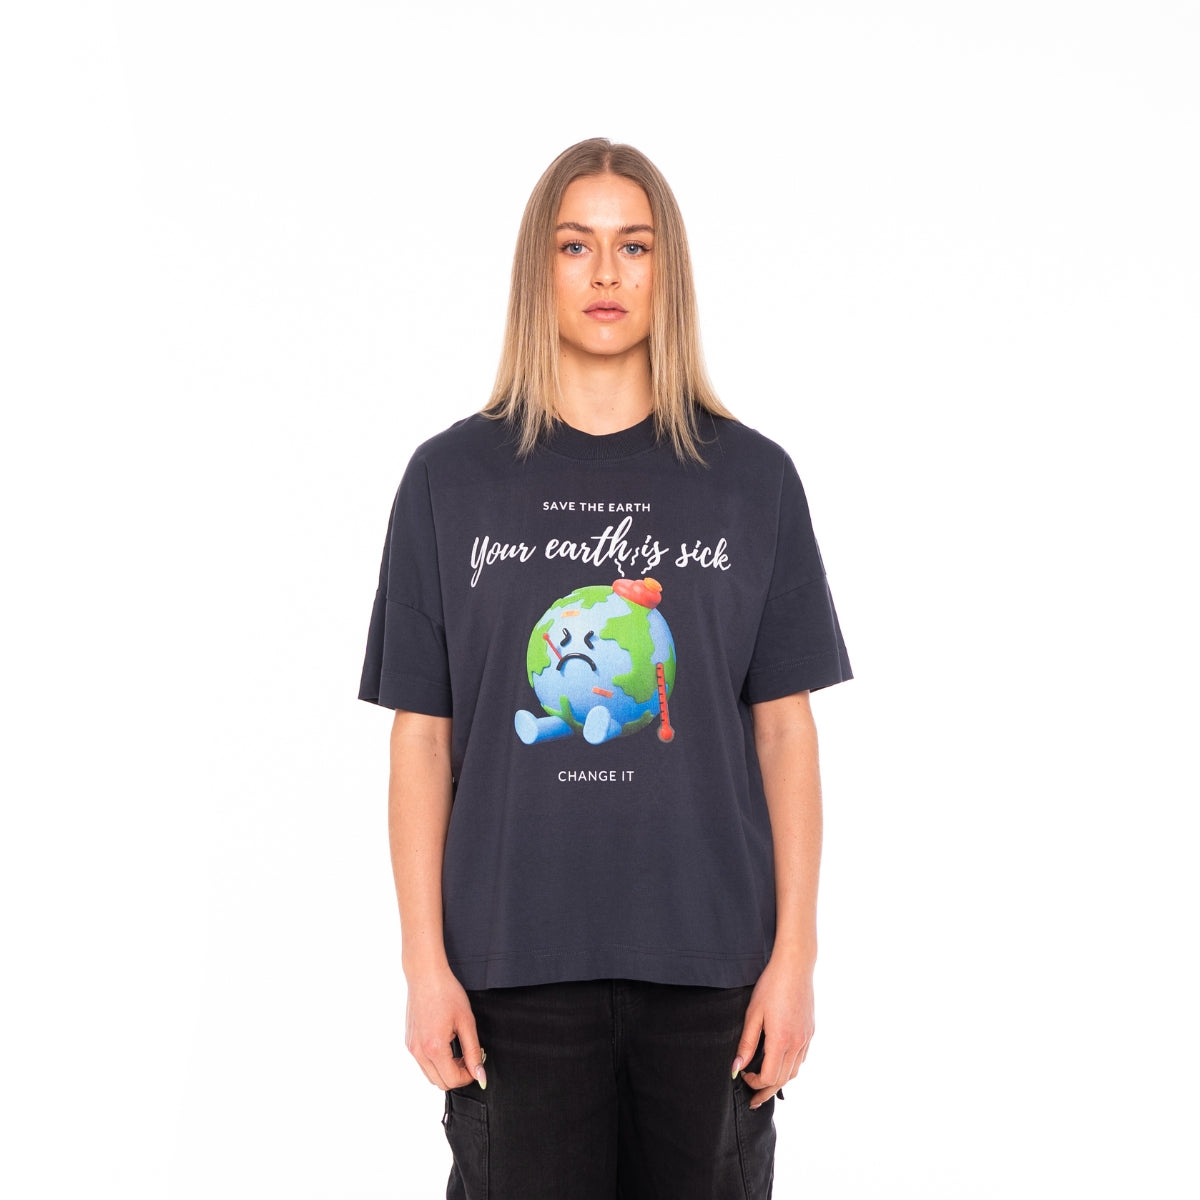 'YOUR EARTH IS SICK' Organic Oversize Shirt in der Farbe India Ink Grey als Frontbild getragen von einem weiblichem Model